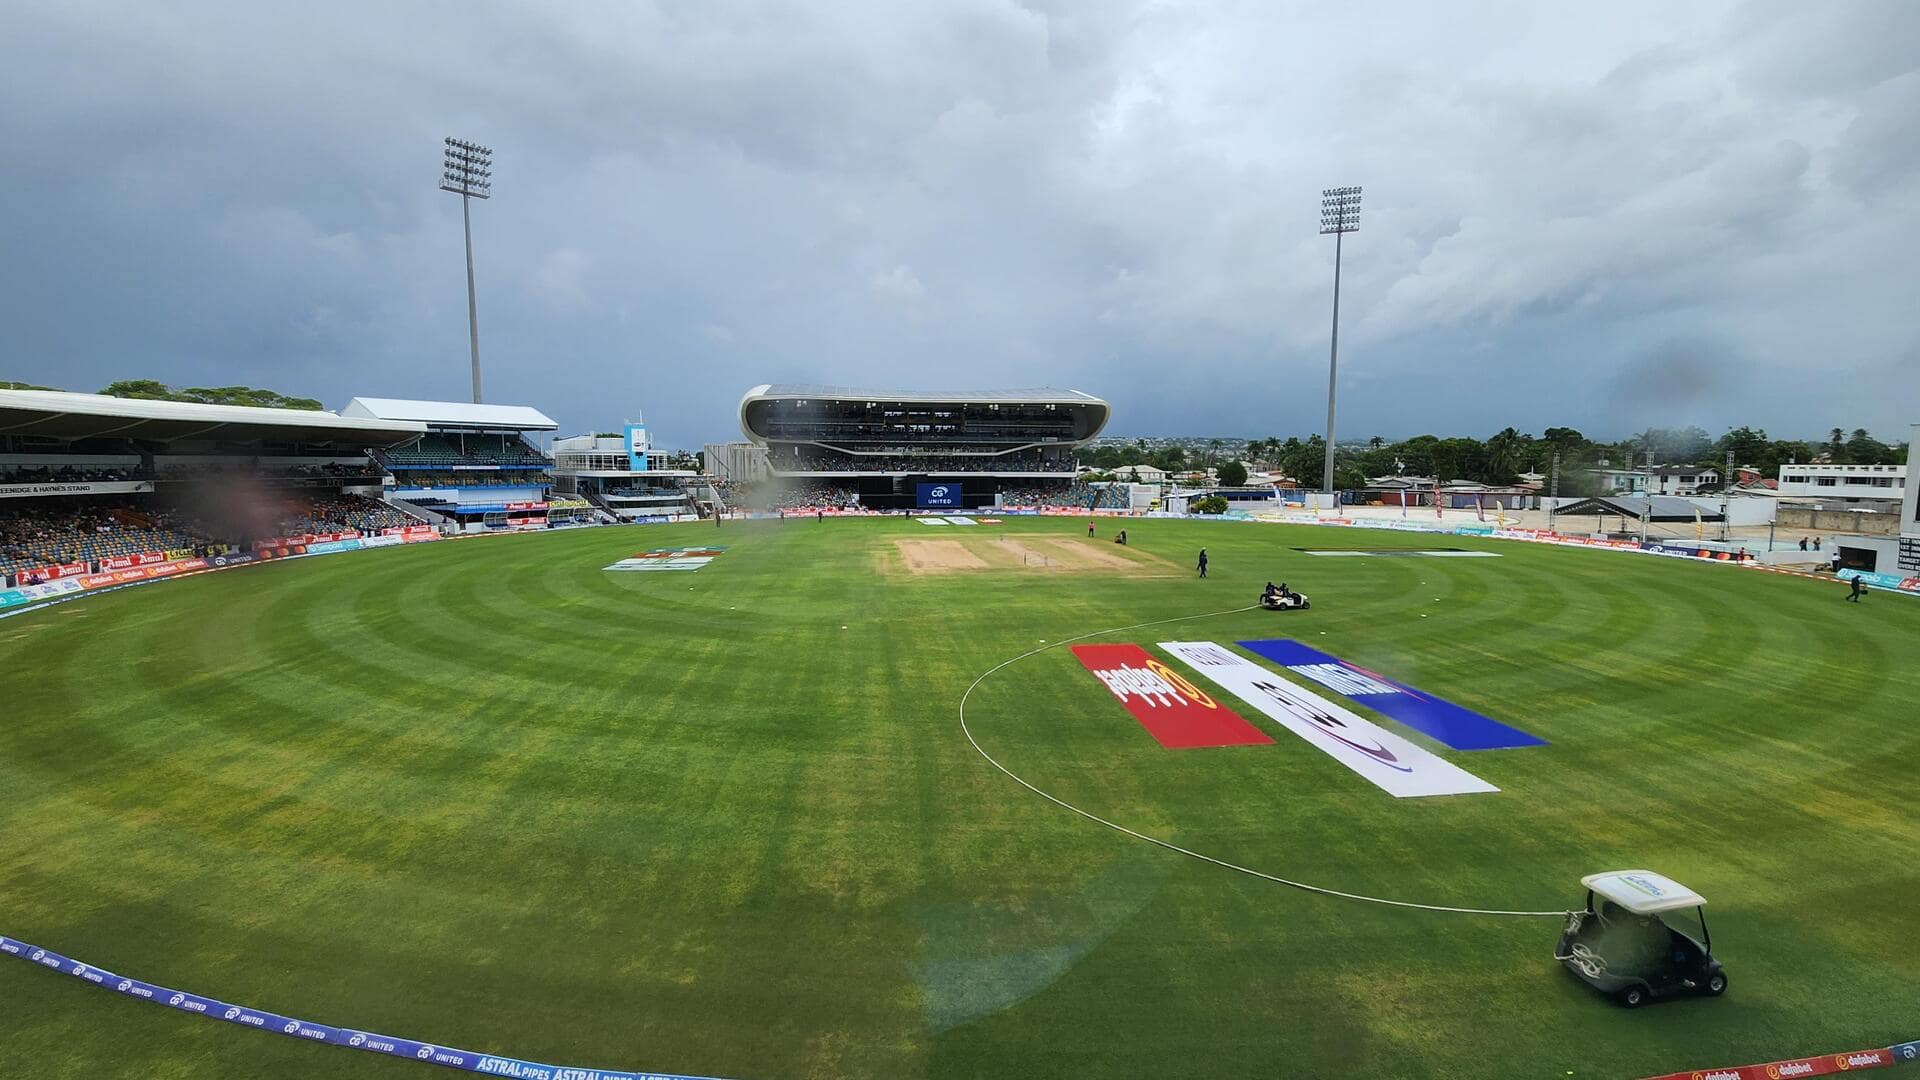 वेस्टइंडीज बनाम भारत: पहले टी-20 मैच की पिच रिपोर्ट और क्वींस पार्क ओवल के आंकड़े 